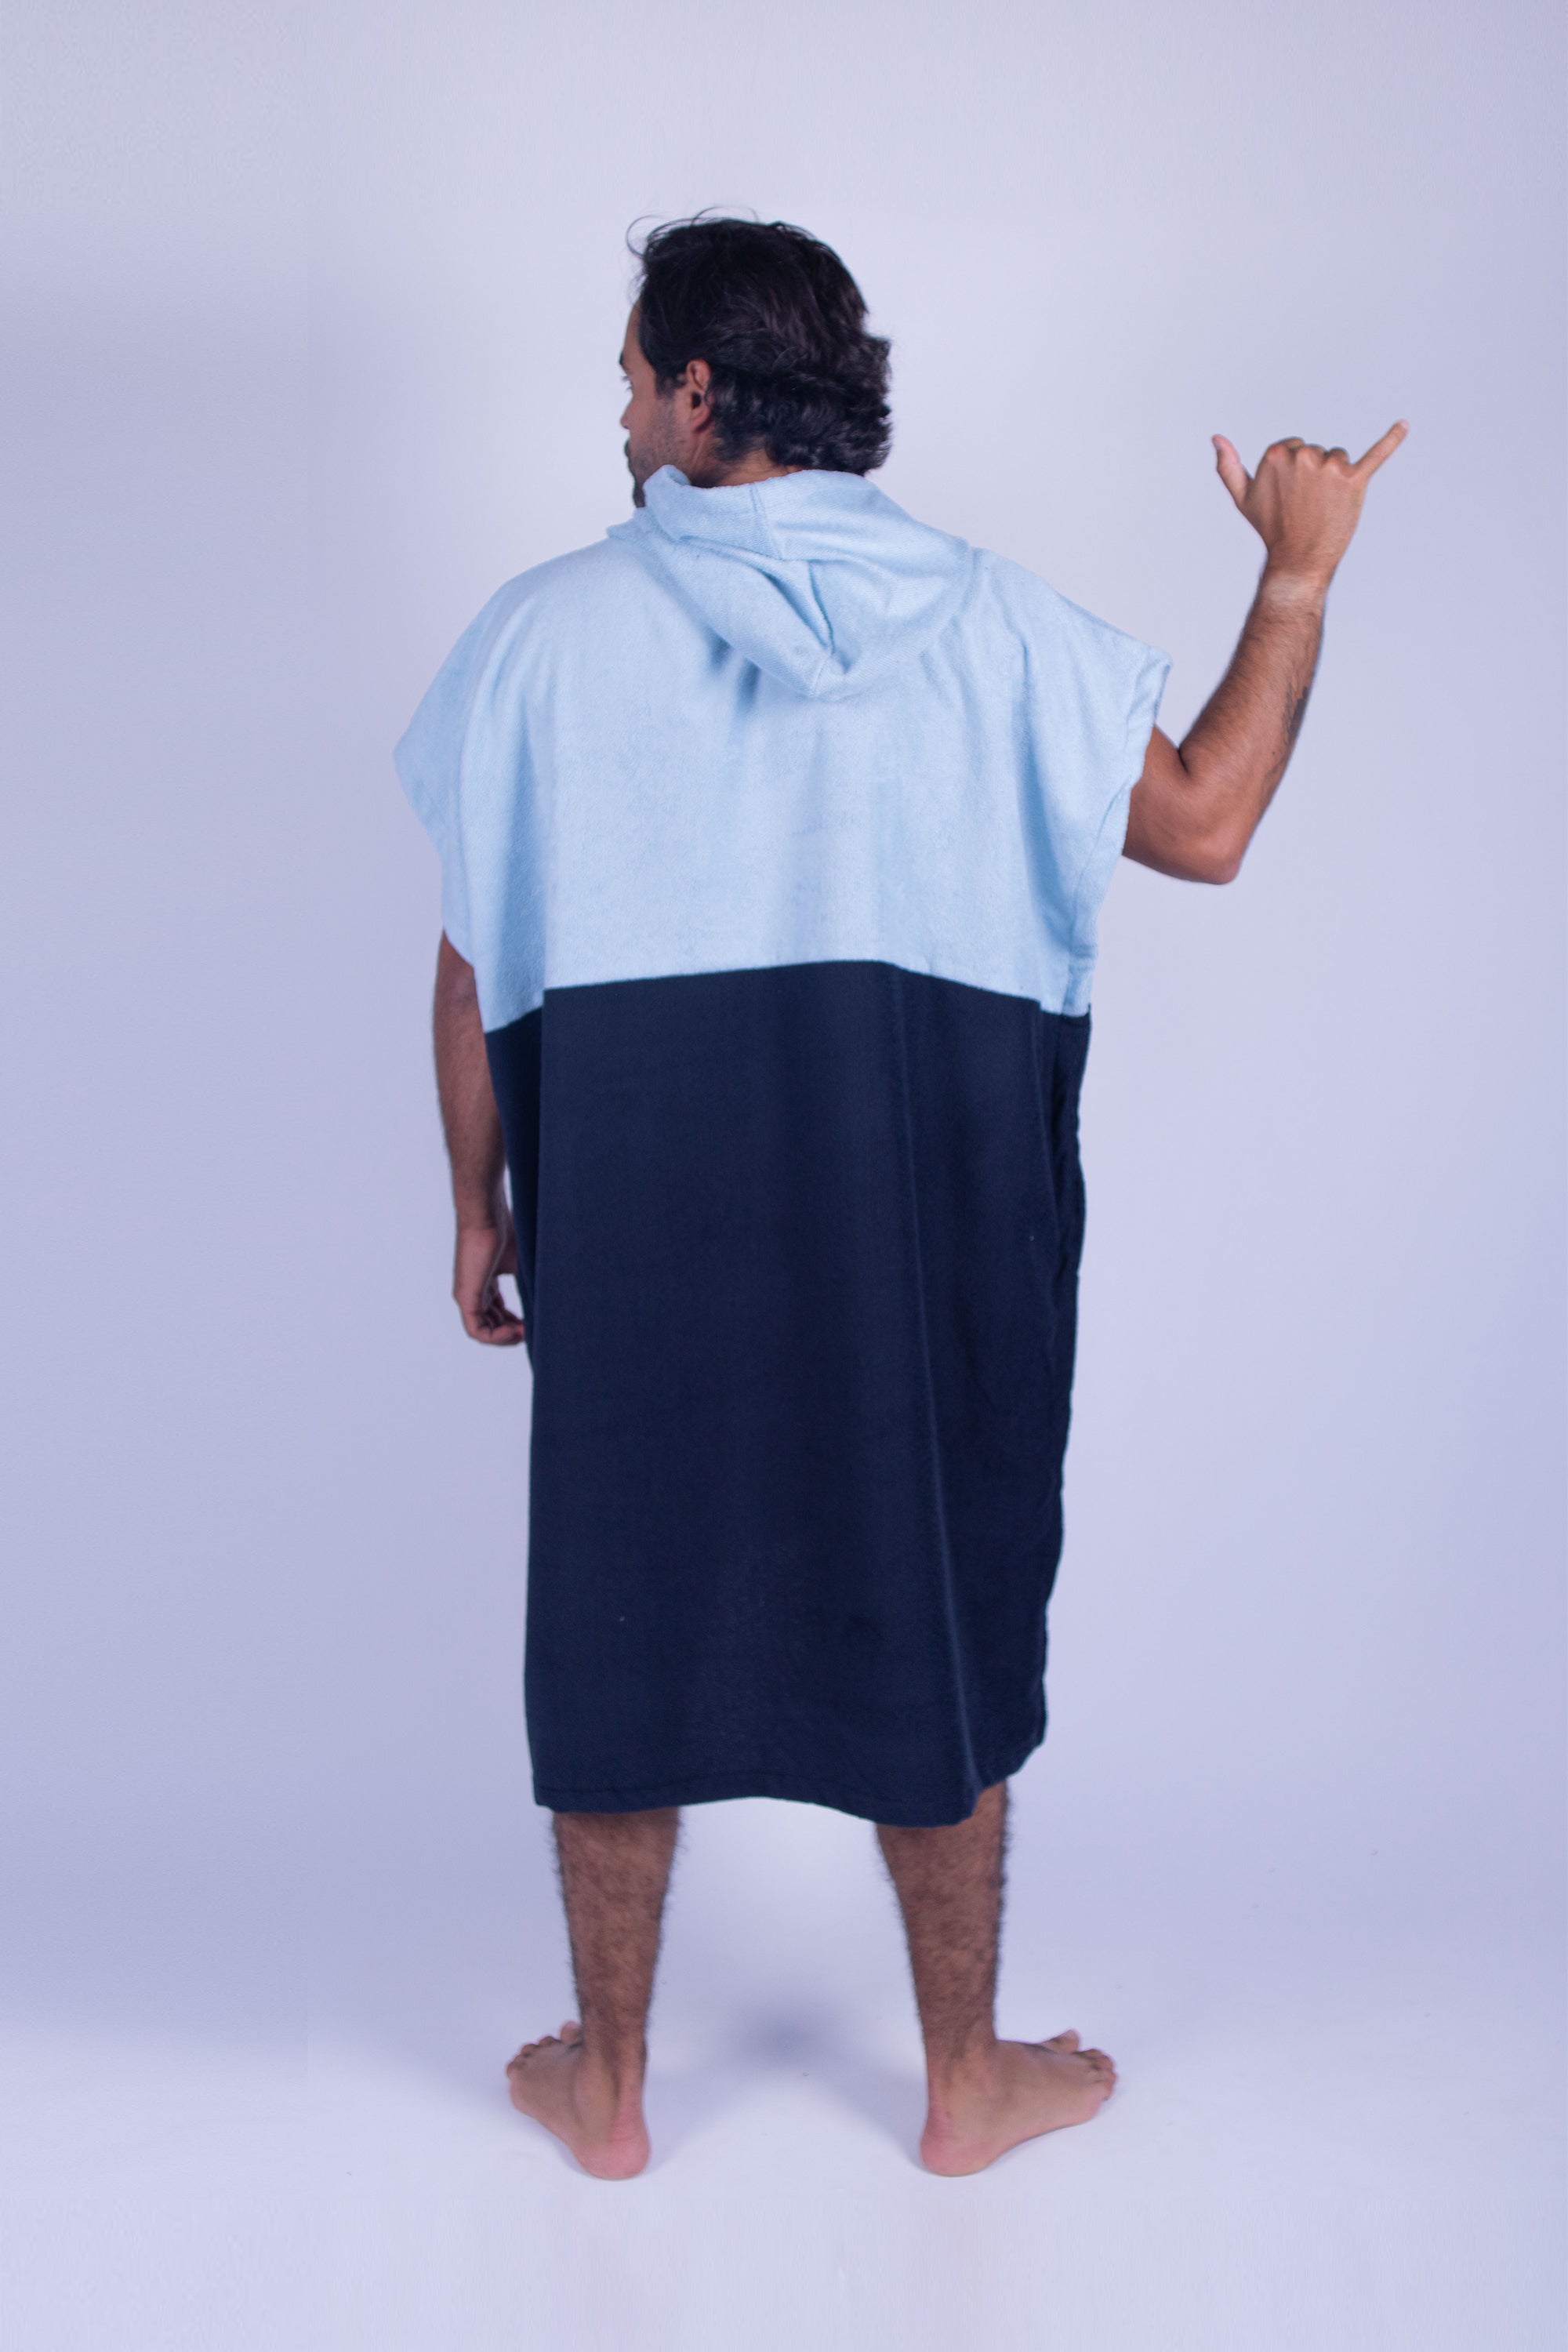 Poncho toalla cambiador de dos colores (Baby azul y azul marino), con bolso en frente y gorro. Ideal para cambiarte en cualquier lugar cómodamente y estar en el después del agua.